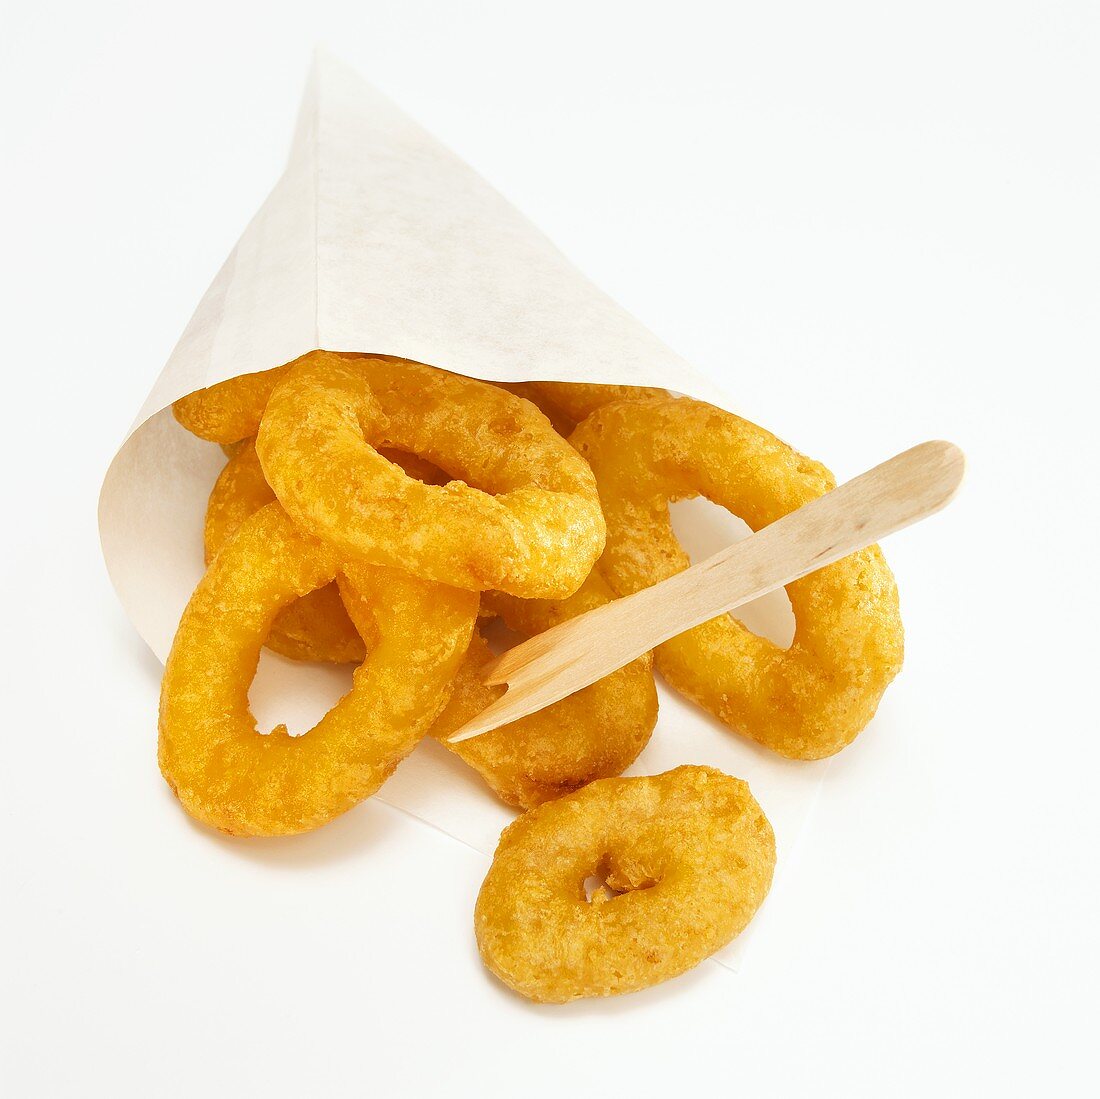 Fried calamari-rings in paper bag